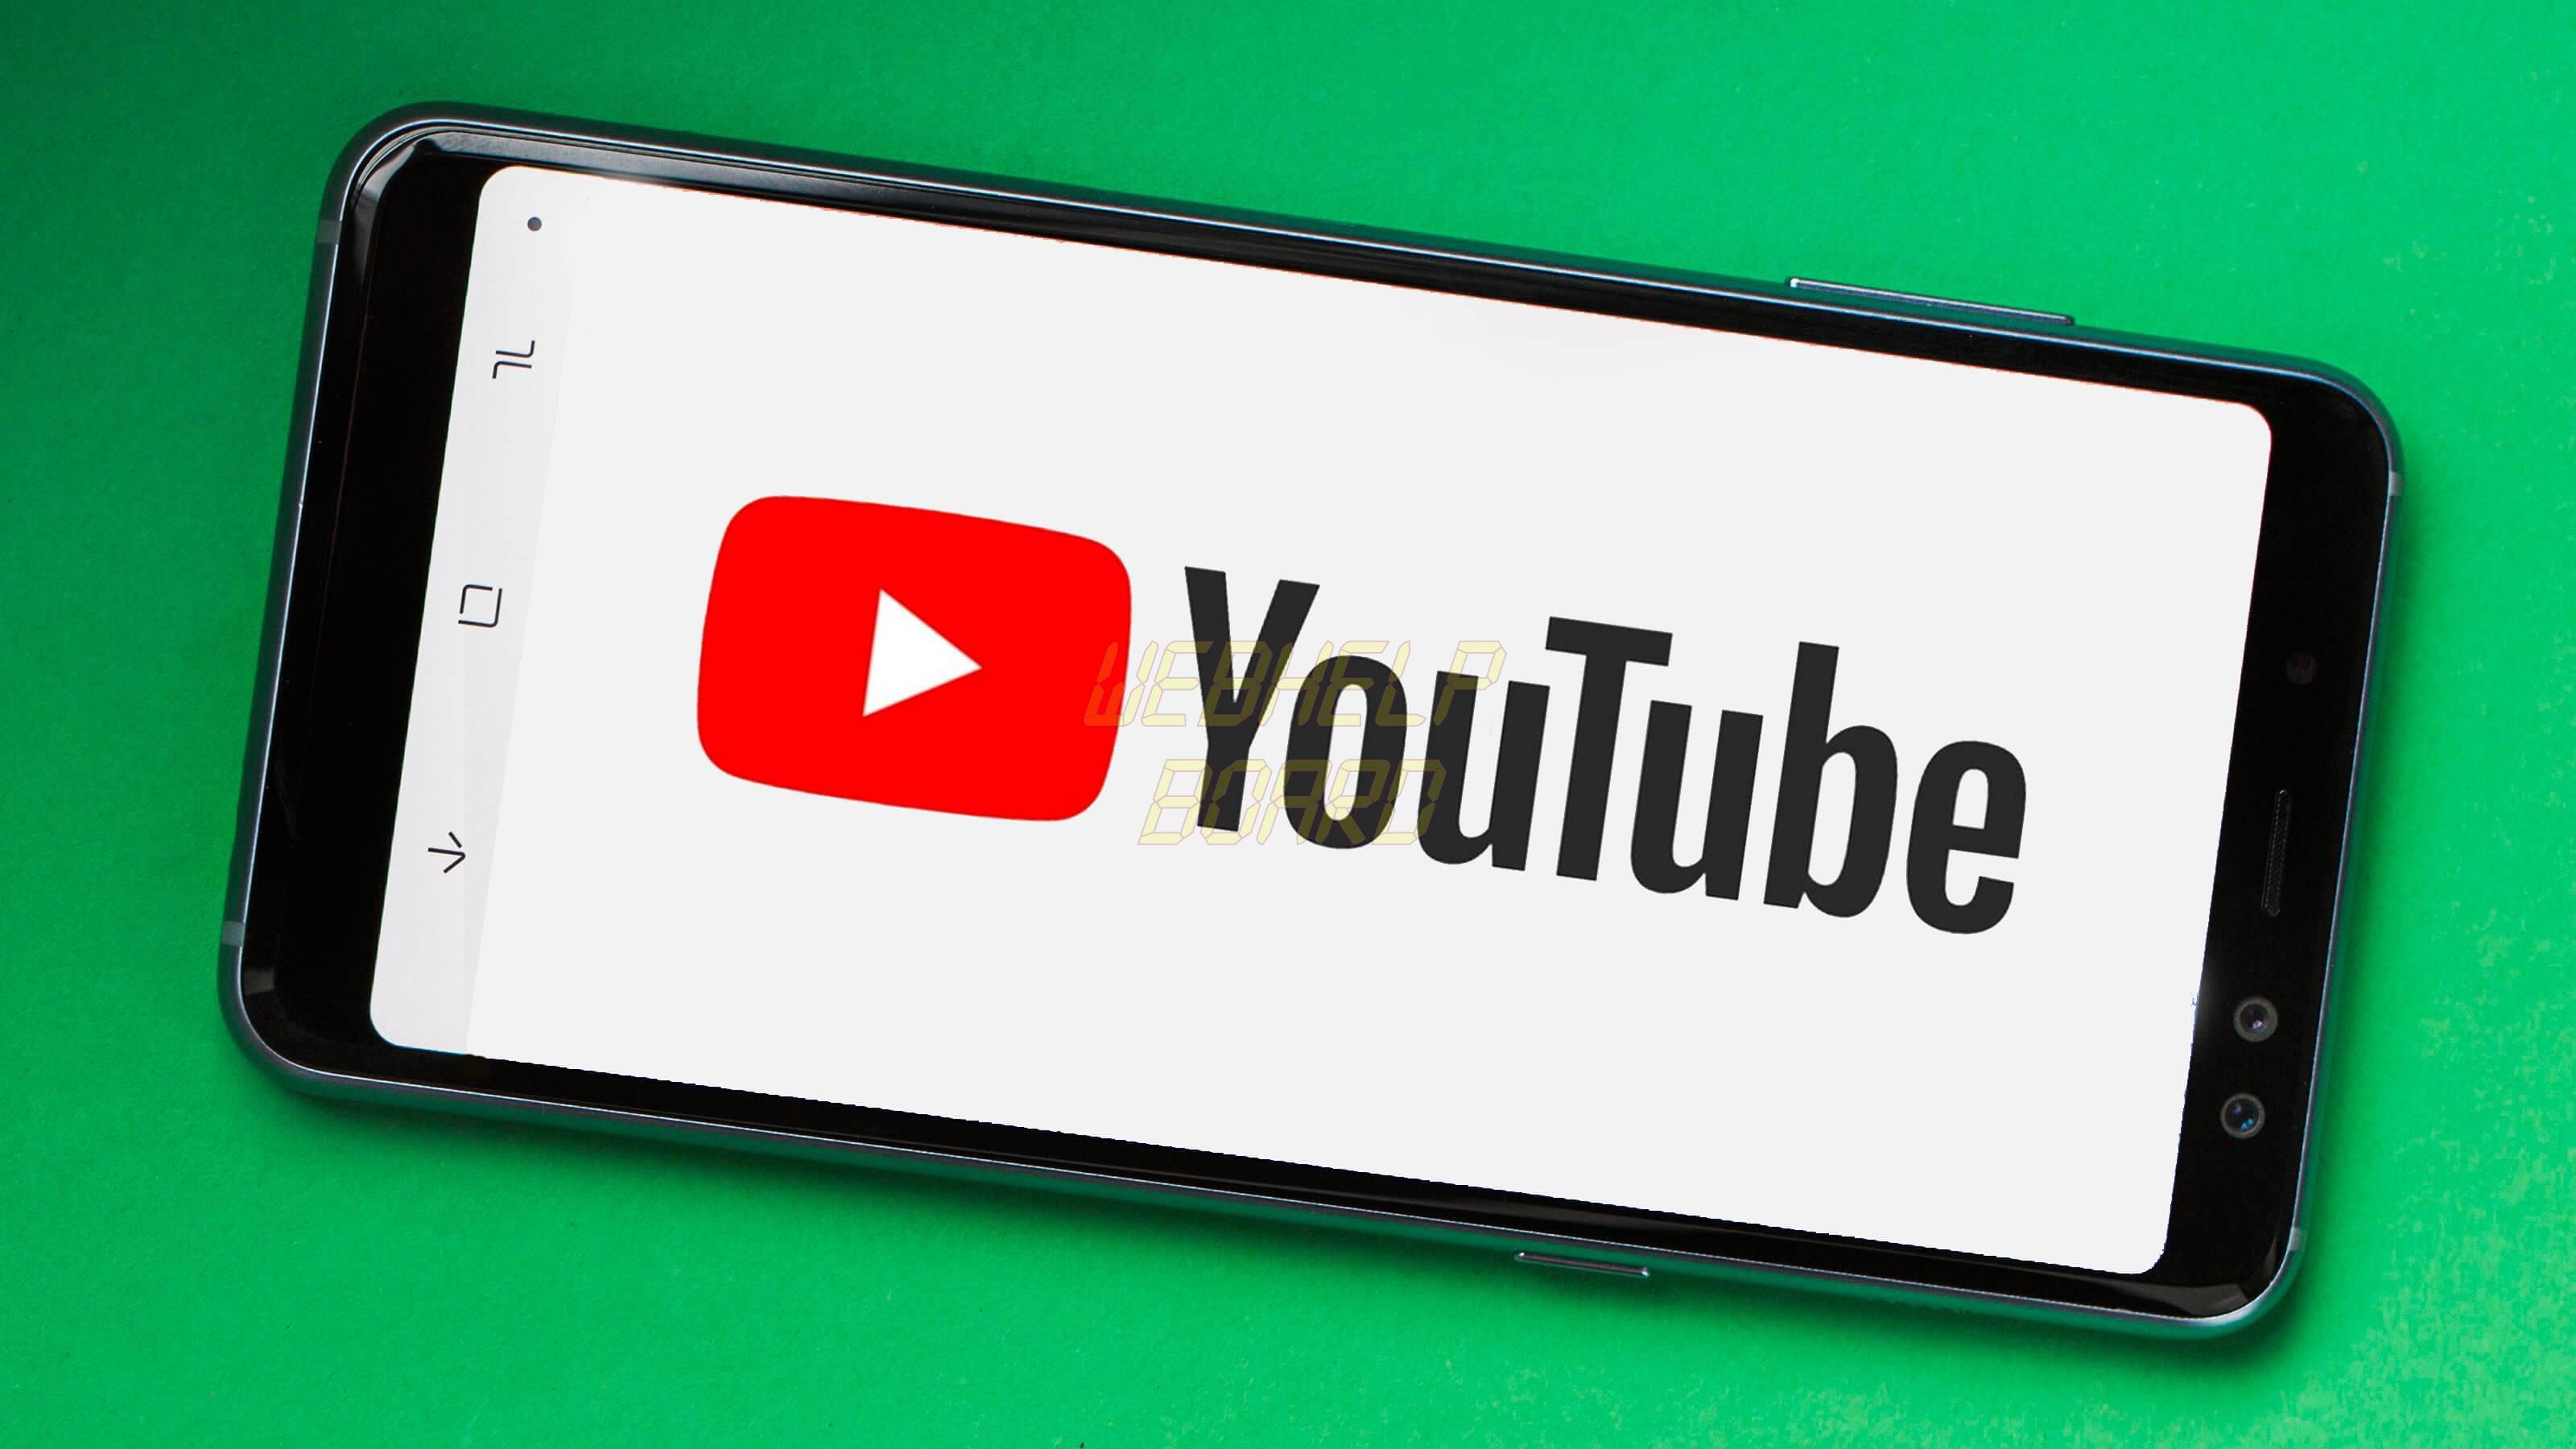 youtube 1 - Tutorial: como usar as novas funções do YouTube antes de outros usuários